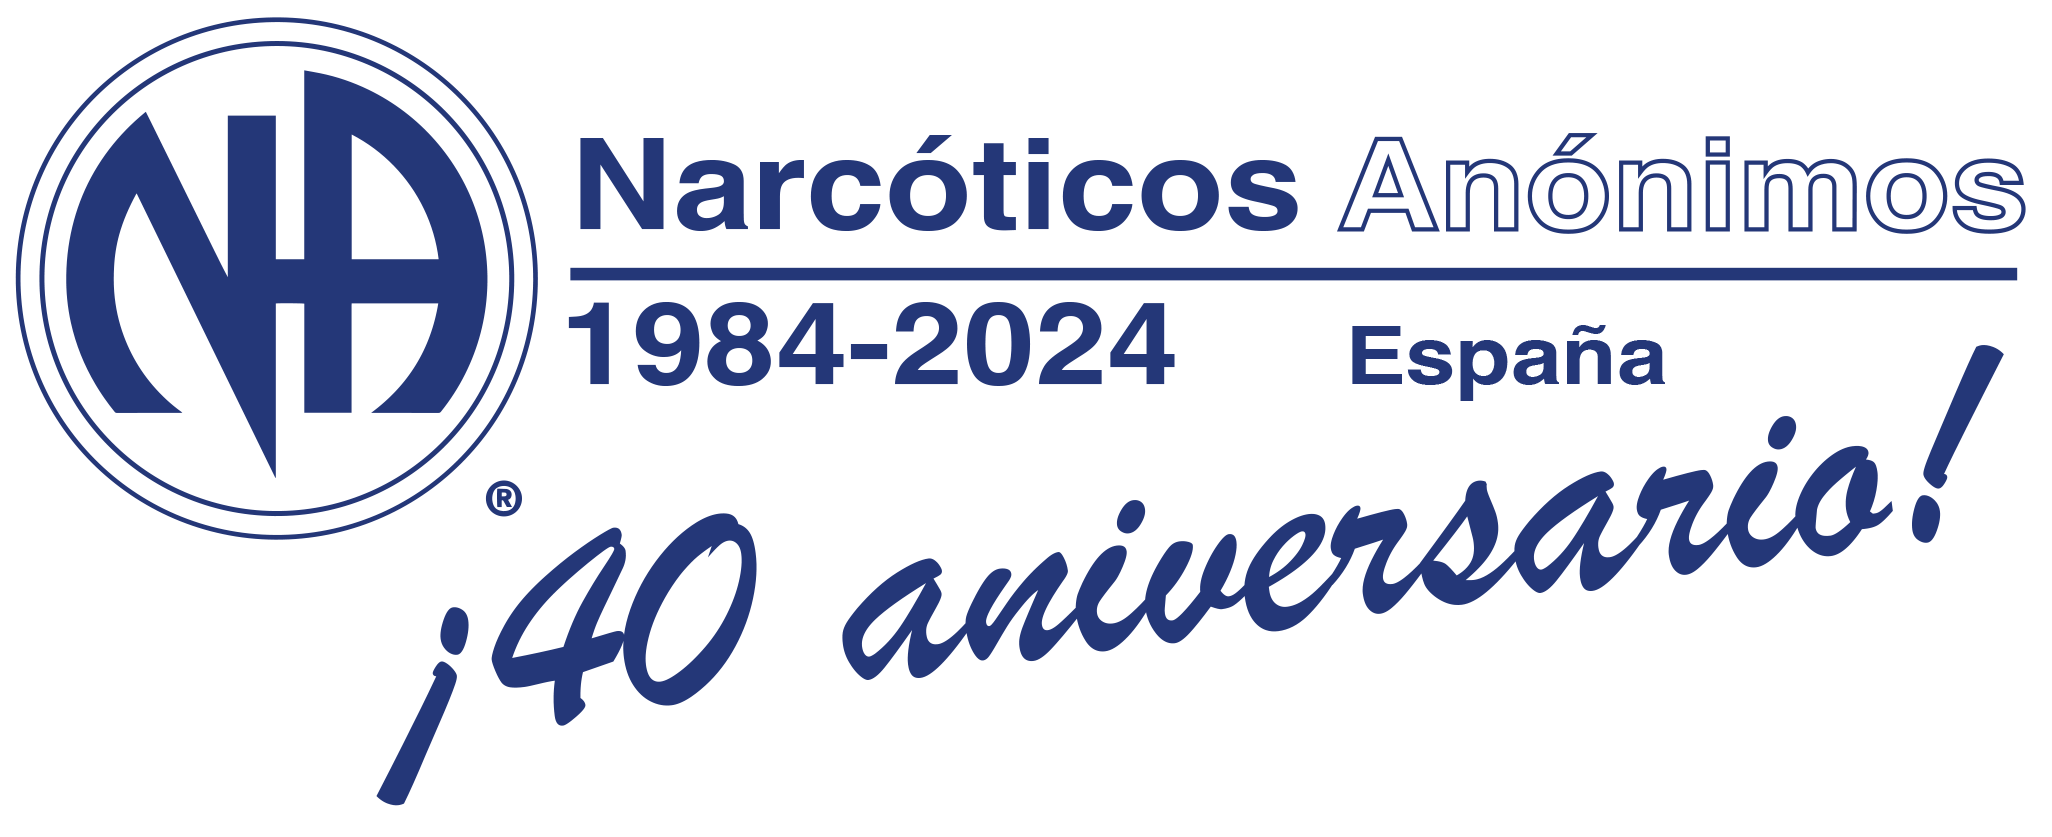 narcoticosanonimos.es